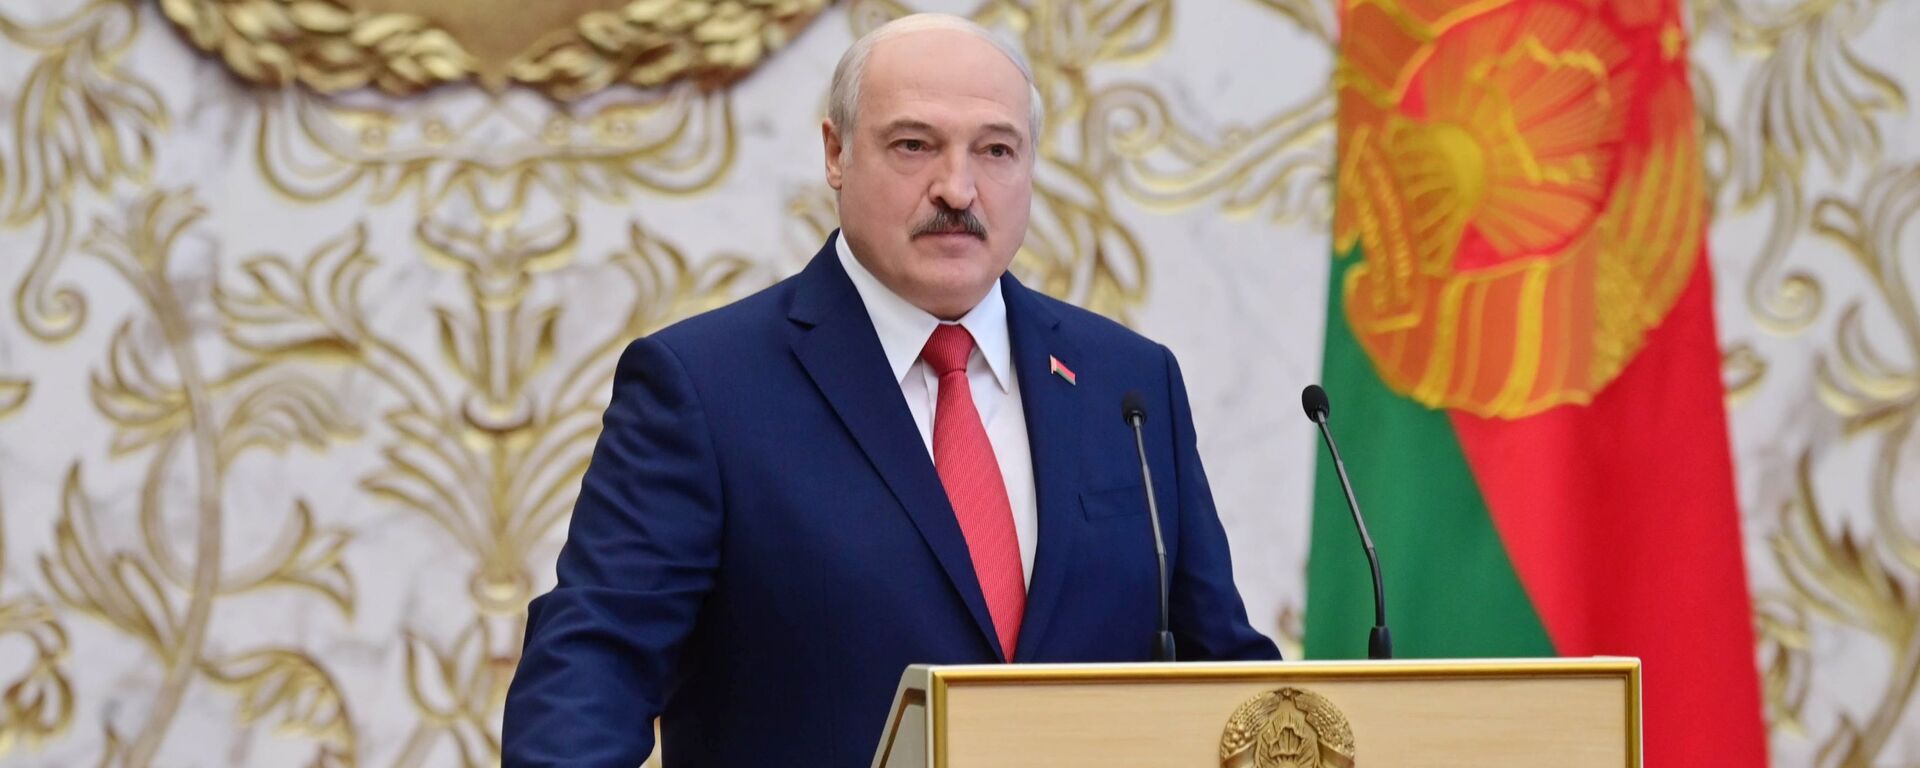 Tổng thống Belarus Alexander Lukashenko tại lễ nhậm chức ở Minsk - Sputnik Việt Nam, 1920, 11.11.2021